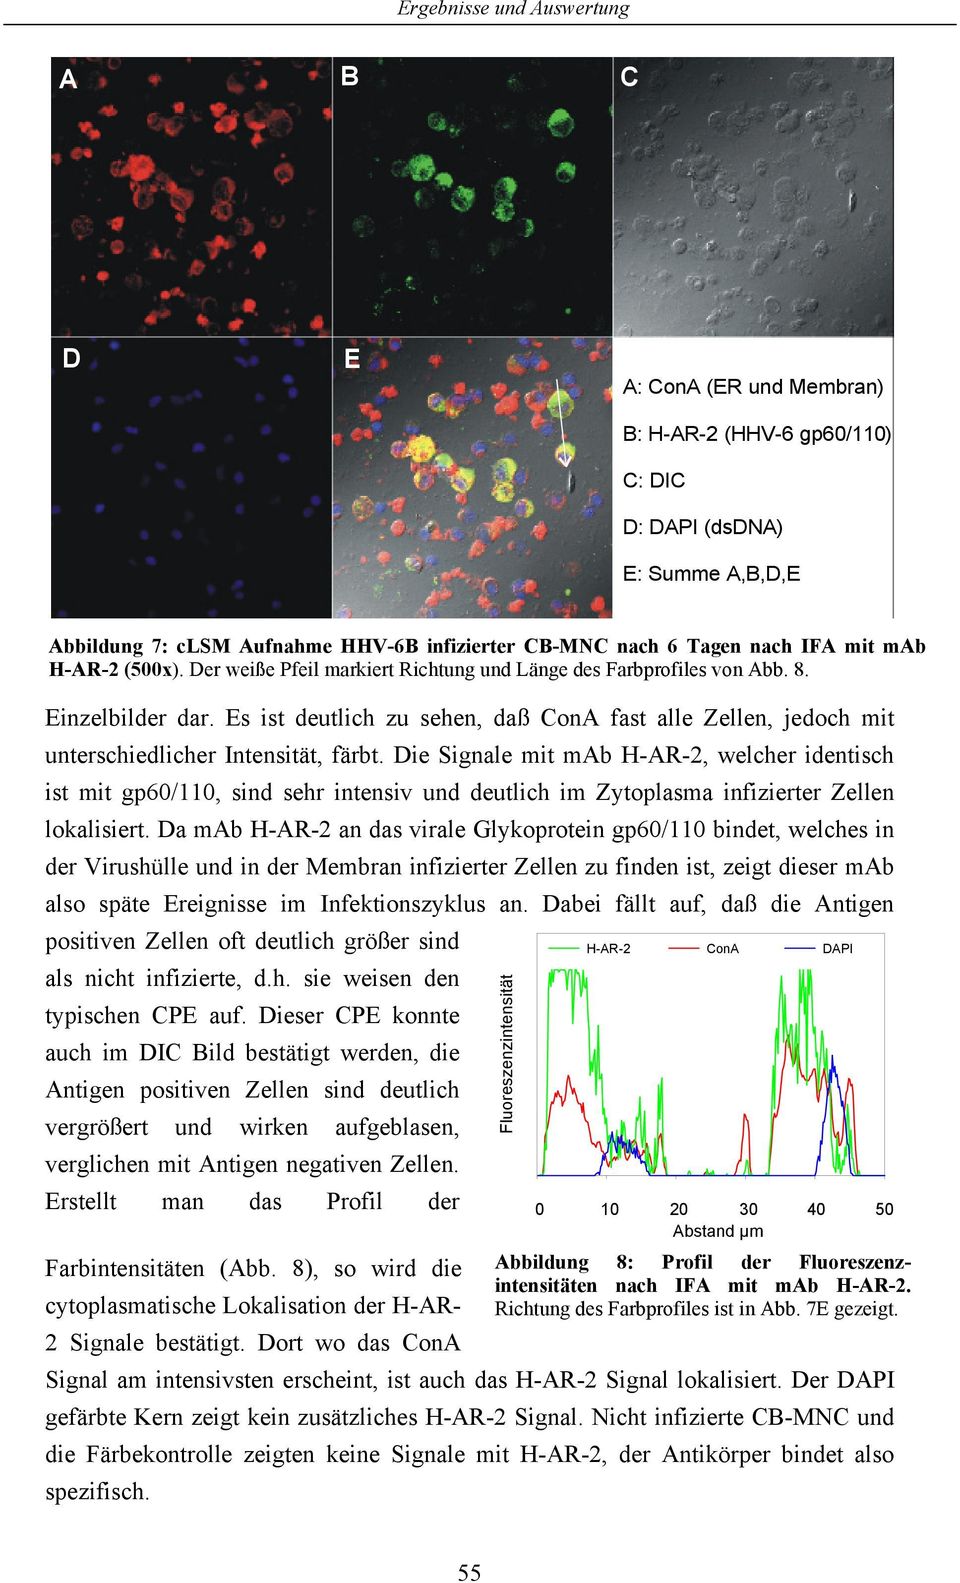 Die Signale mit mab H-AR-2, welcher identisch ist mit gp6/11, sind sehr intensiv und deutlich im Zytoplasma infizierter Zellen lokalisiert.